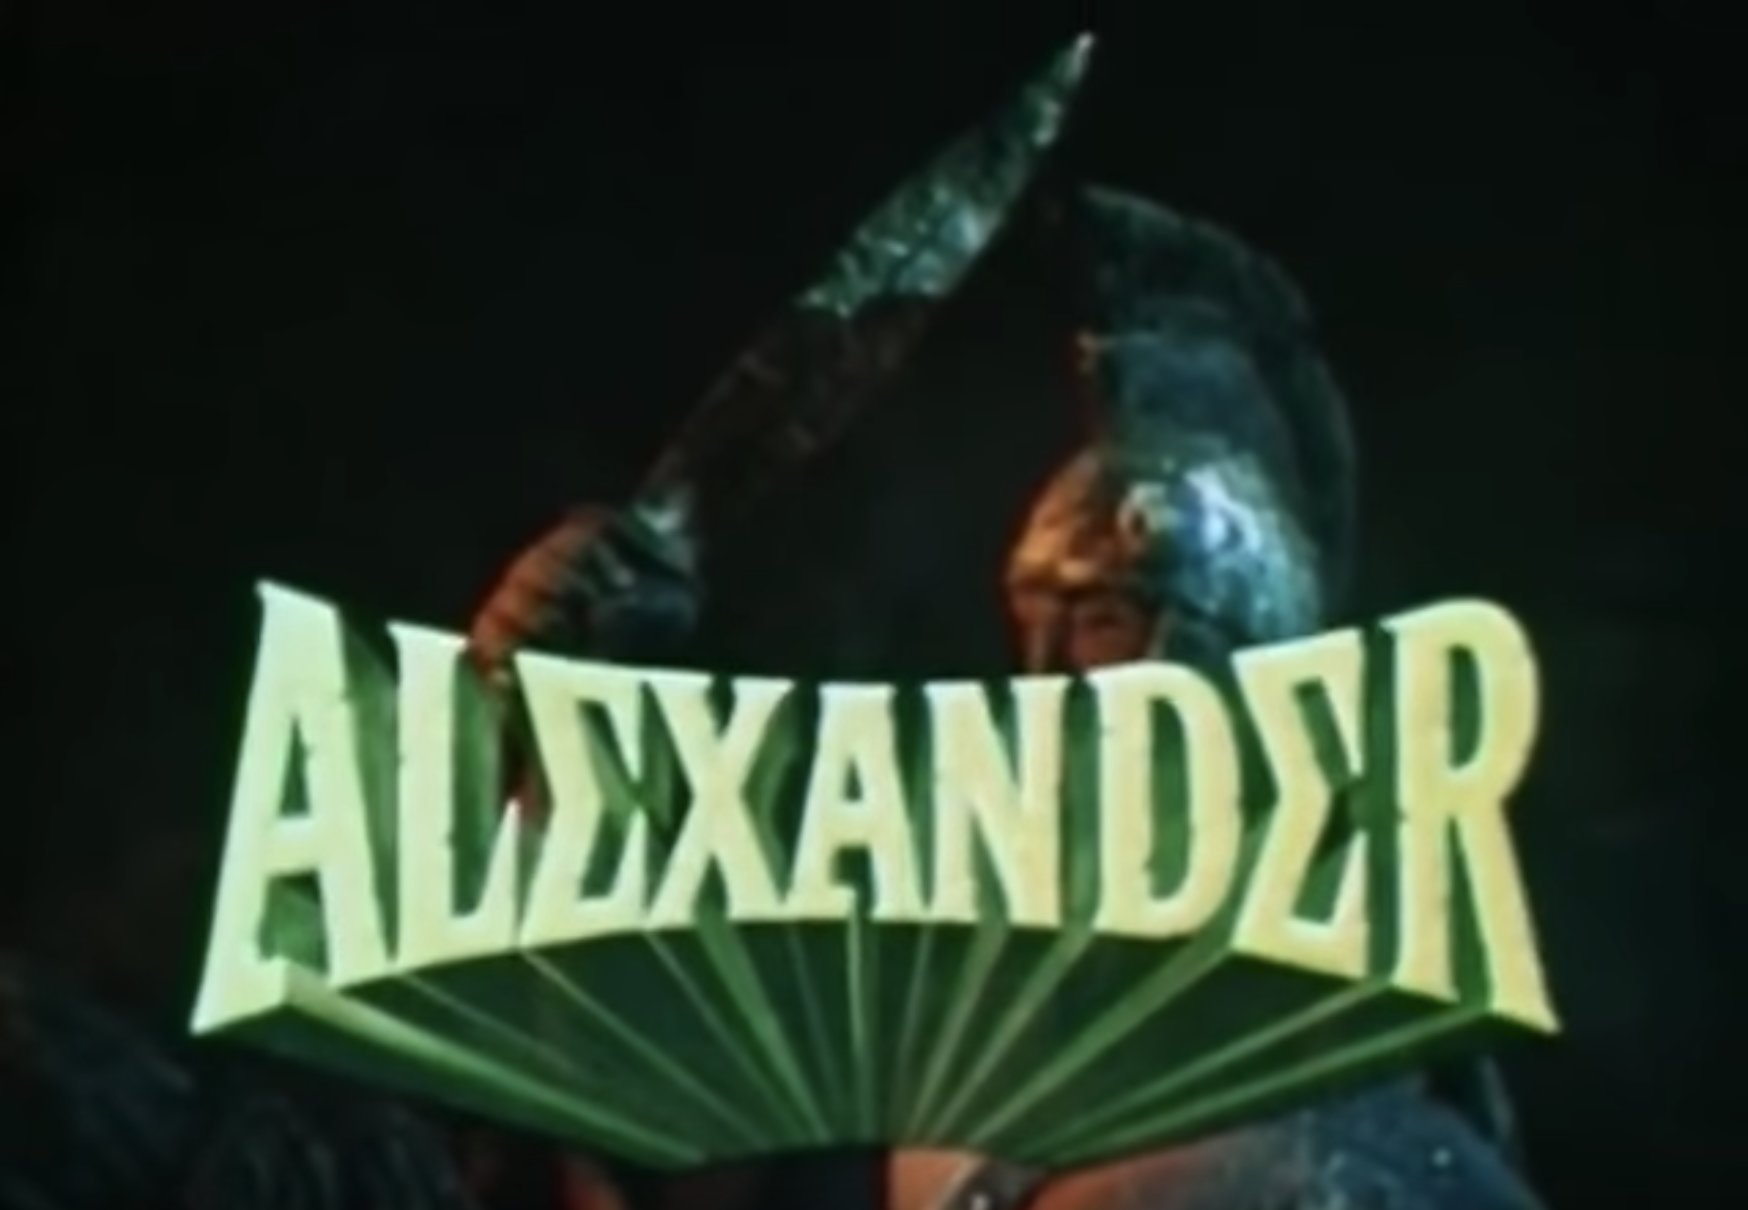 Ο Γουίλιαμ Σάτνερ πρωταγωνιστεί ως…Μέγας Αλέξανδρος! Το Χολιγούντ αναγνωρίζει την ΕΛΛΗΝΙΚΟΤΗΤΑ της ΜΑΚΕΔΟΝΙΑΣ! 